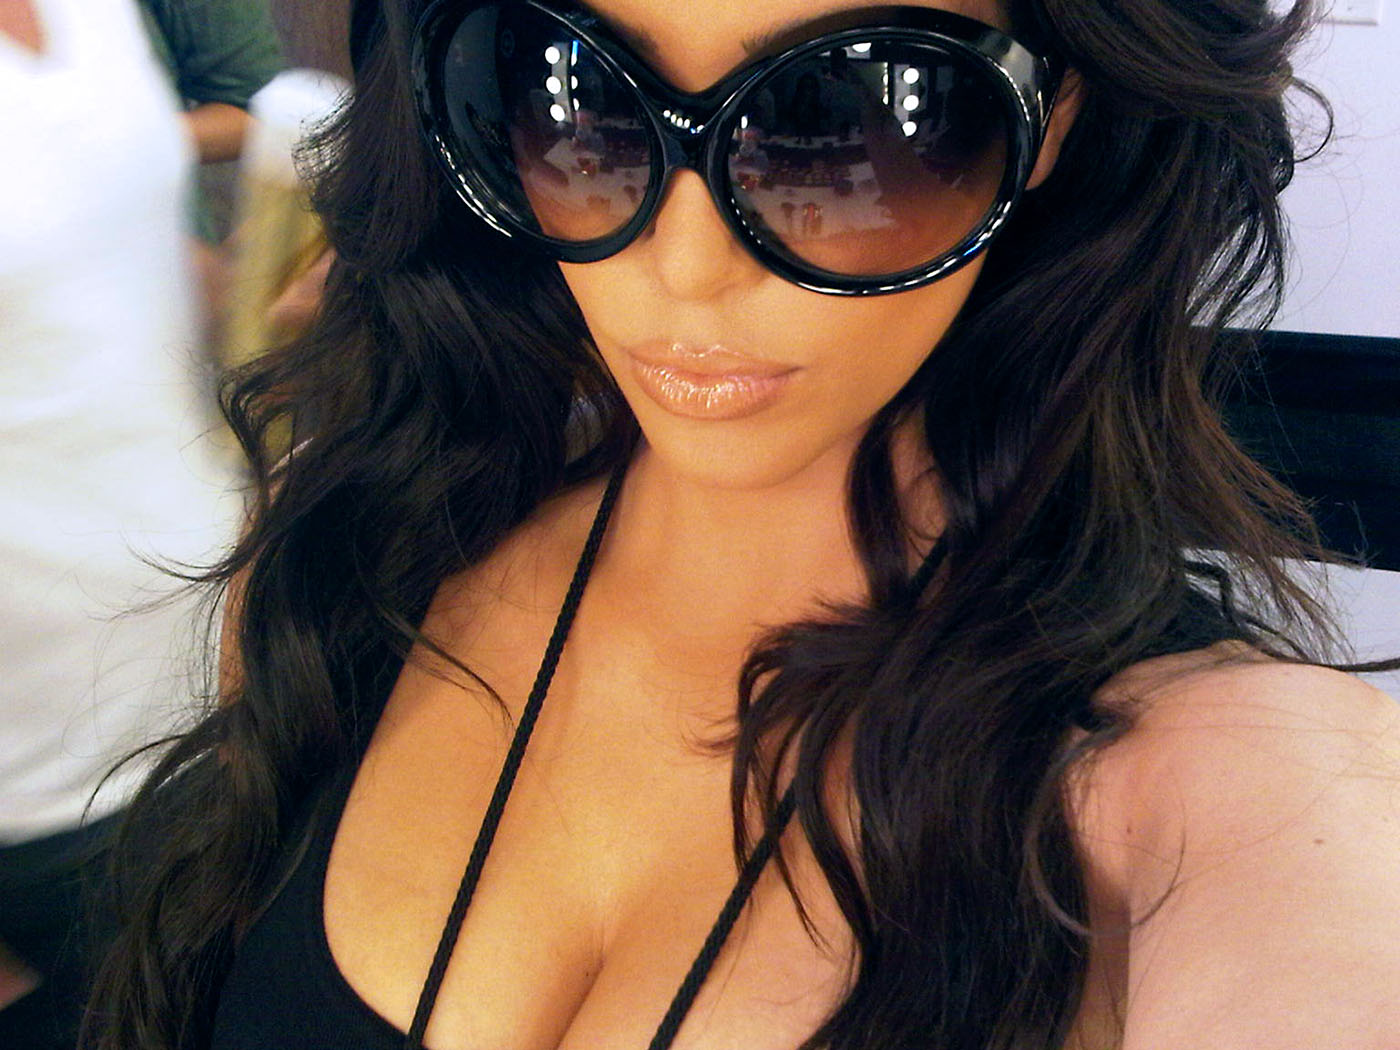 http://3.bp.blogspot.com/-N91UExoW-SY/To8ozhbyTgI/AAAAAAAACQE/1prc-KoZxQk/s1600/kim-kardashian-sunglasses-addiction.jpg